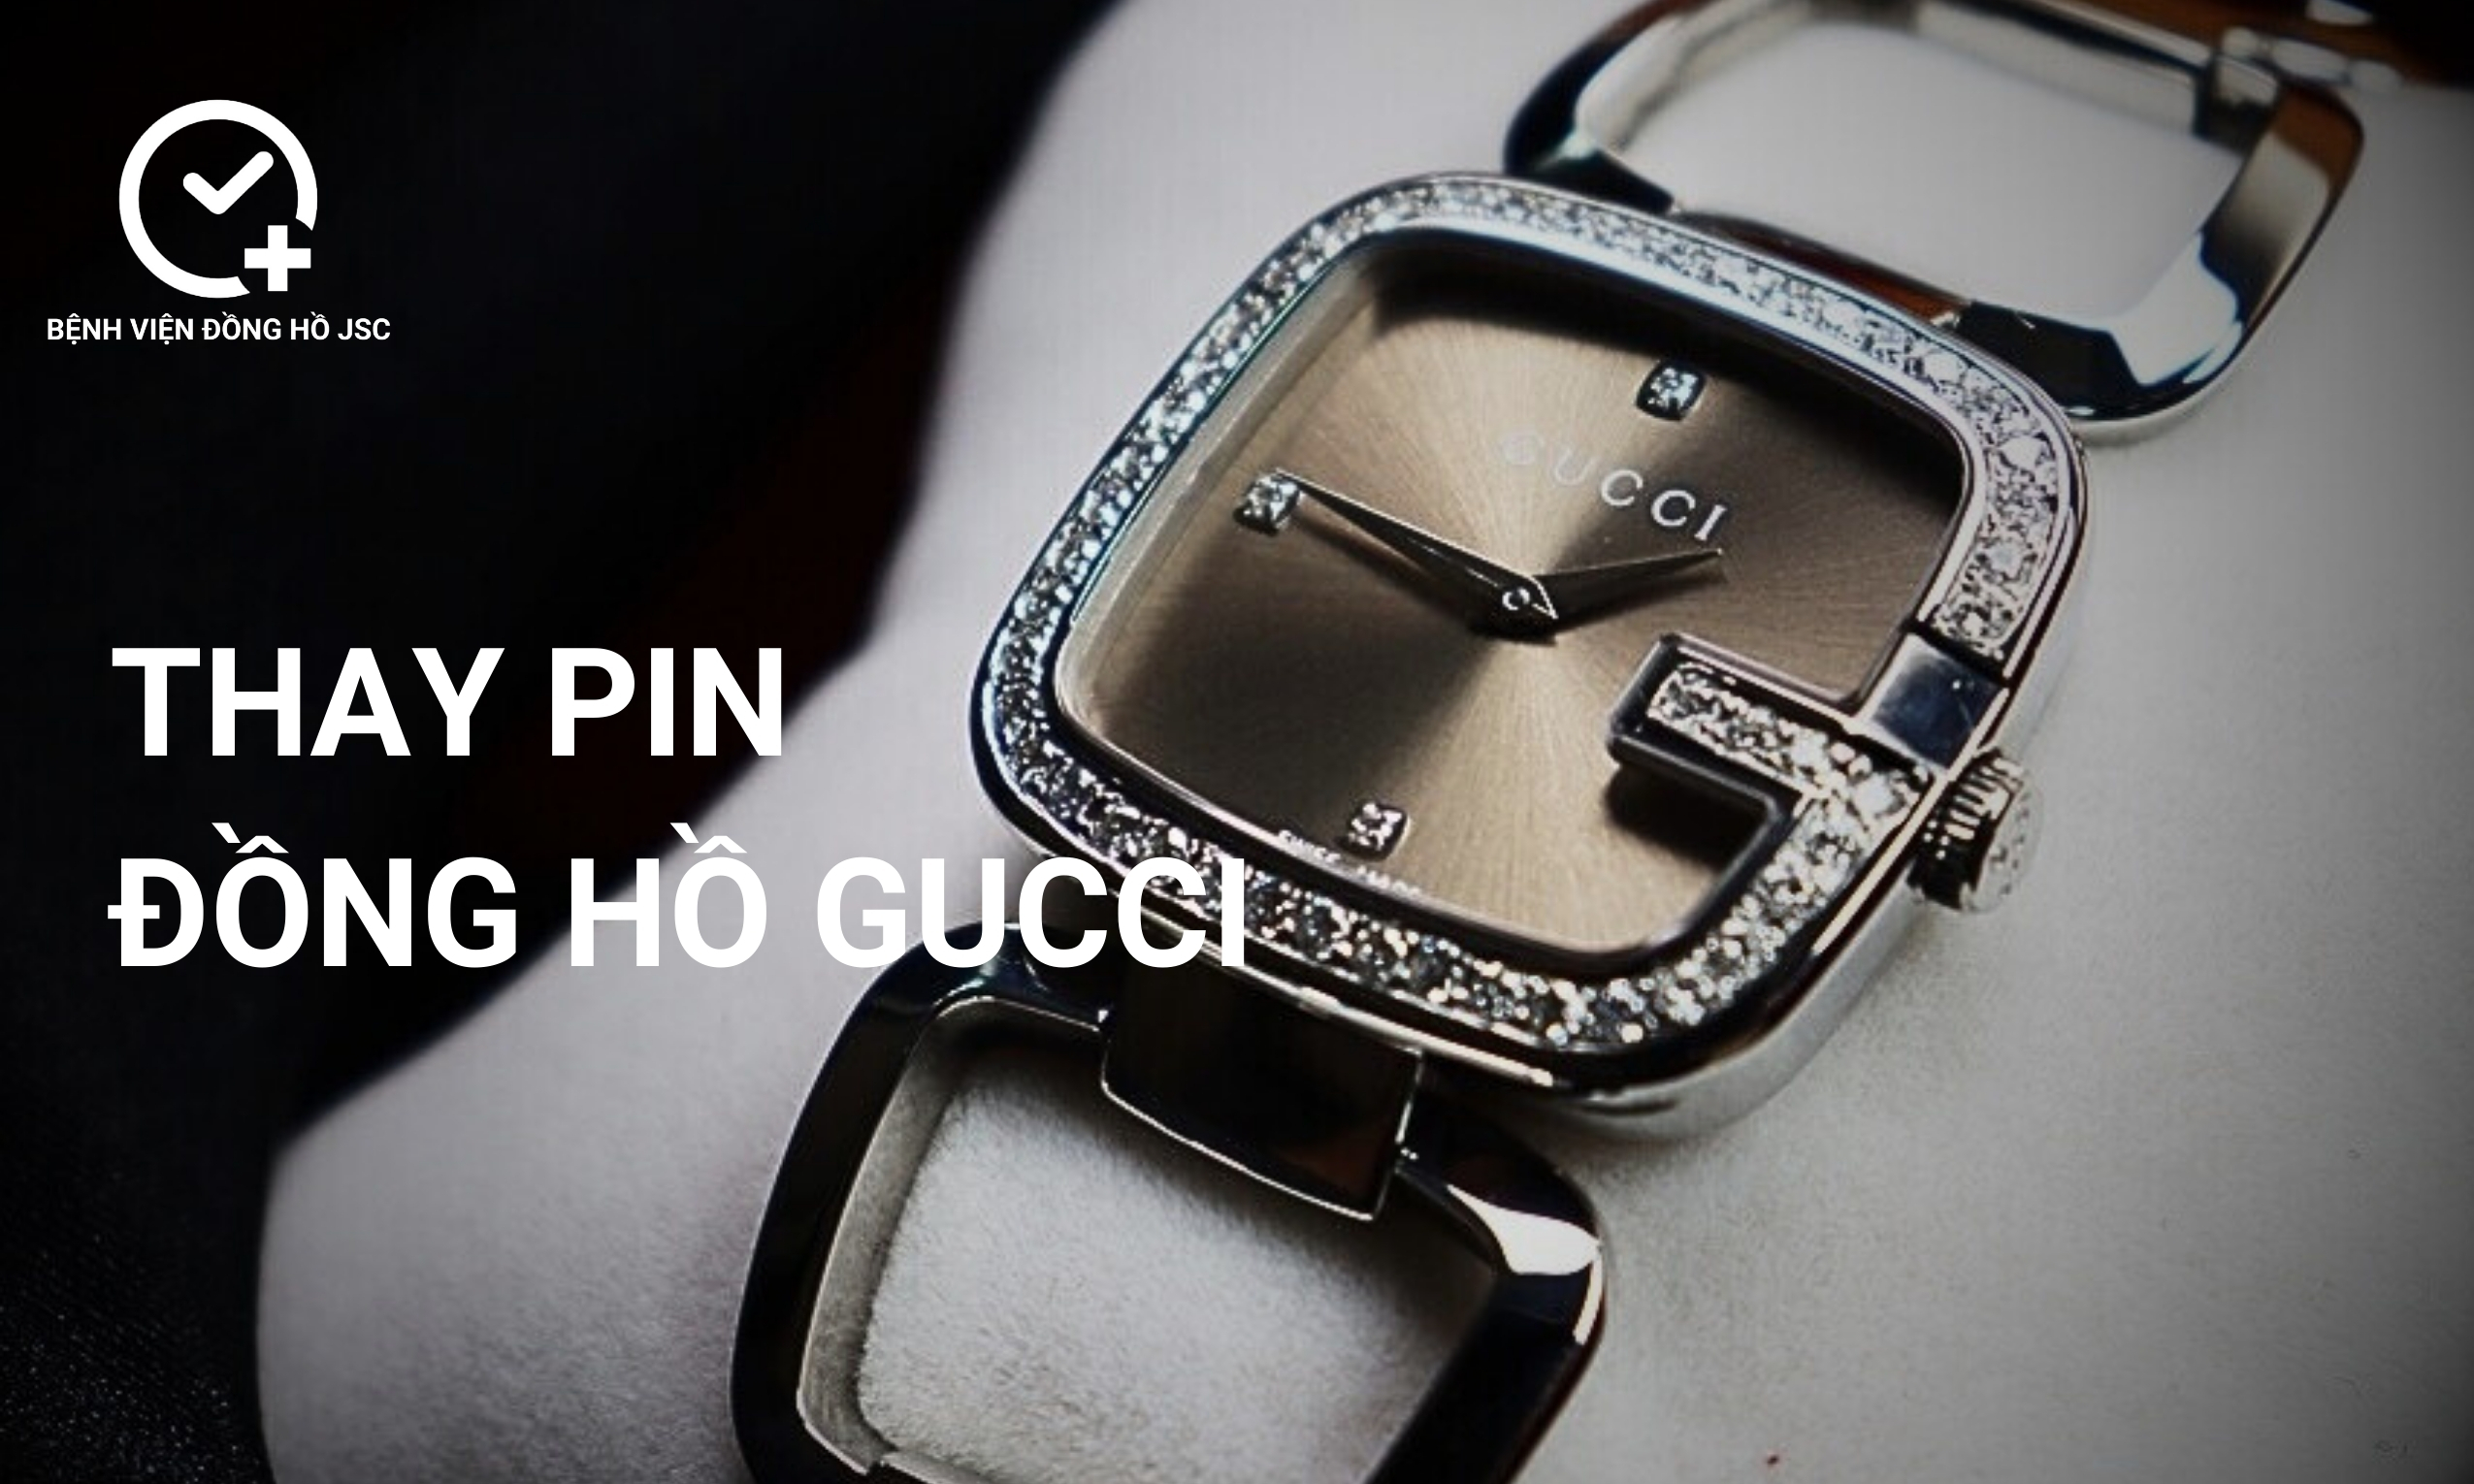 Thay pin đồng hồ Gucci – Địa chỉ thay pin chuyên nghiệp